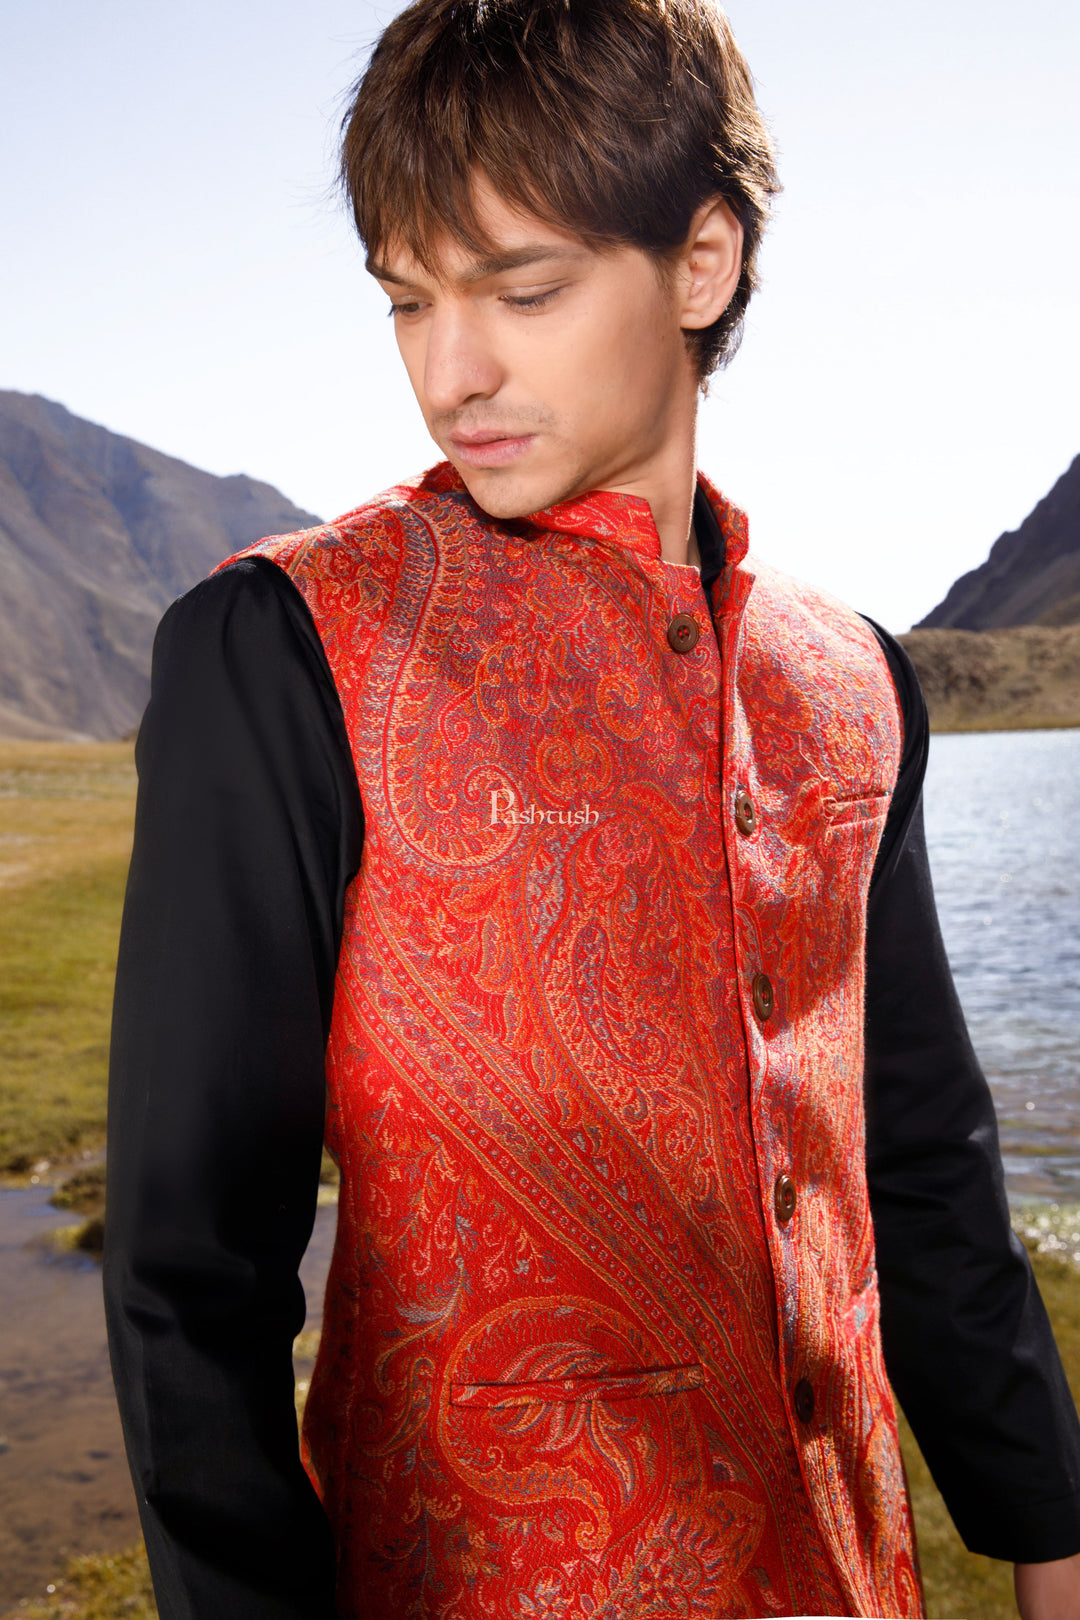 Pashtush India Coats & Jackets Pashtush Mens Woven Jacquard Waistcoat, Structured Slim Fit, Festive Maroon